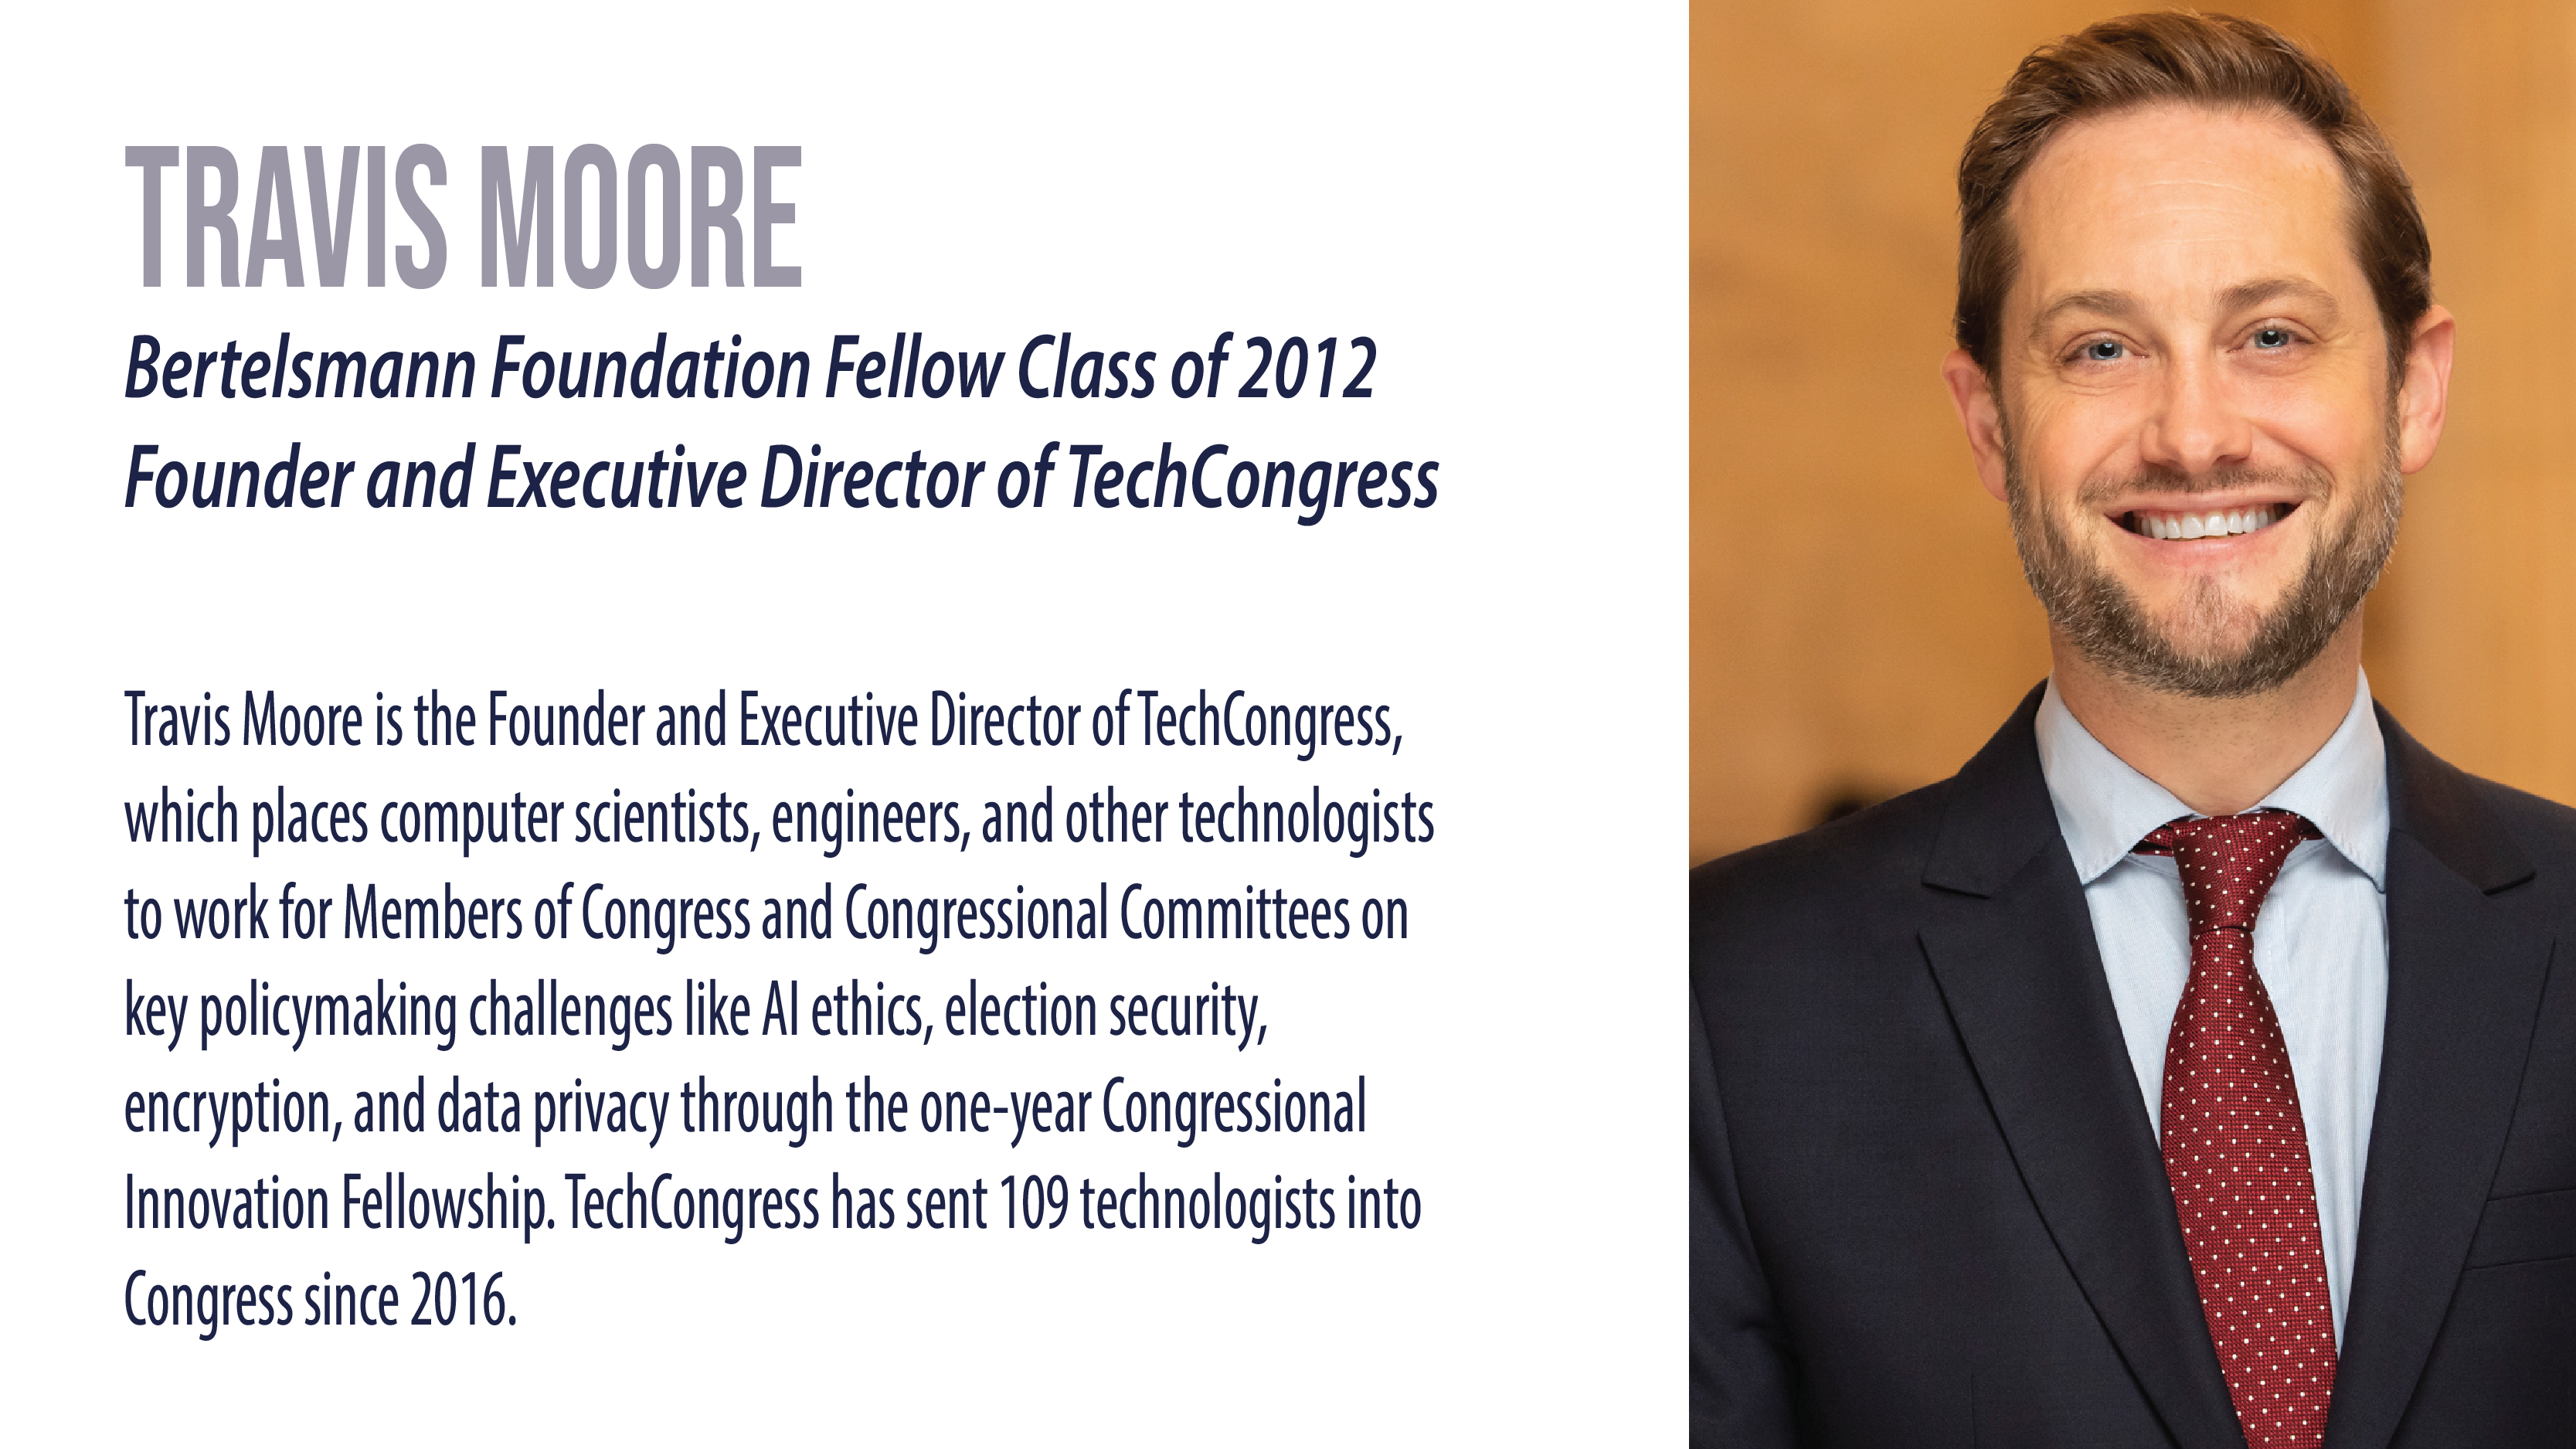  | Bertelsmann Foundation Fellow Class of 2012; Founder and Executive Director of TechCongress